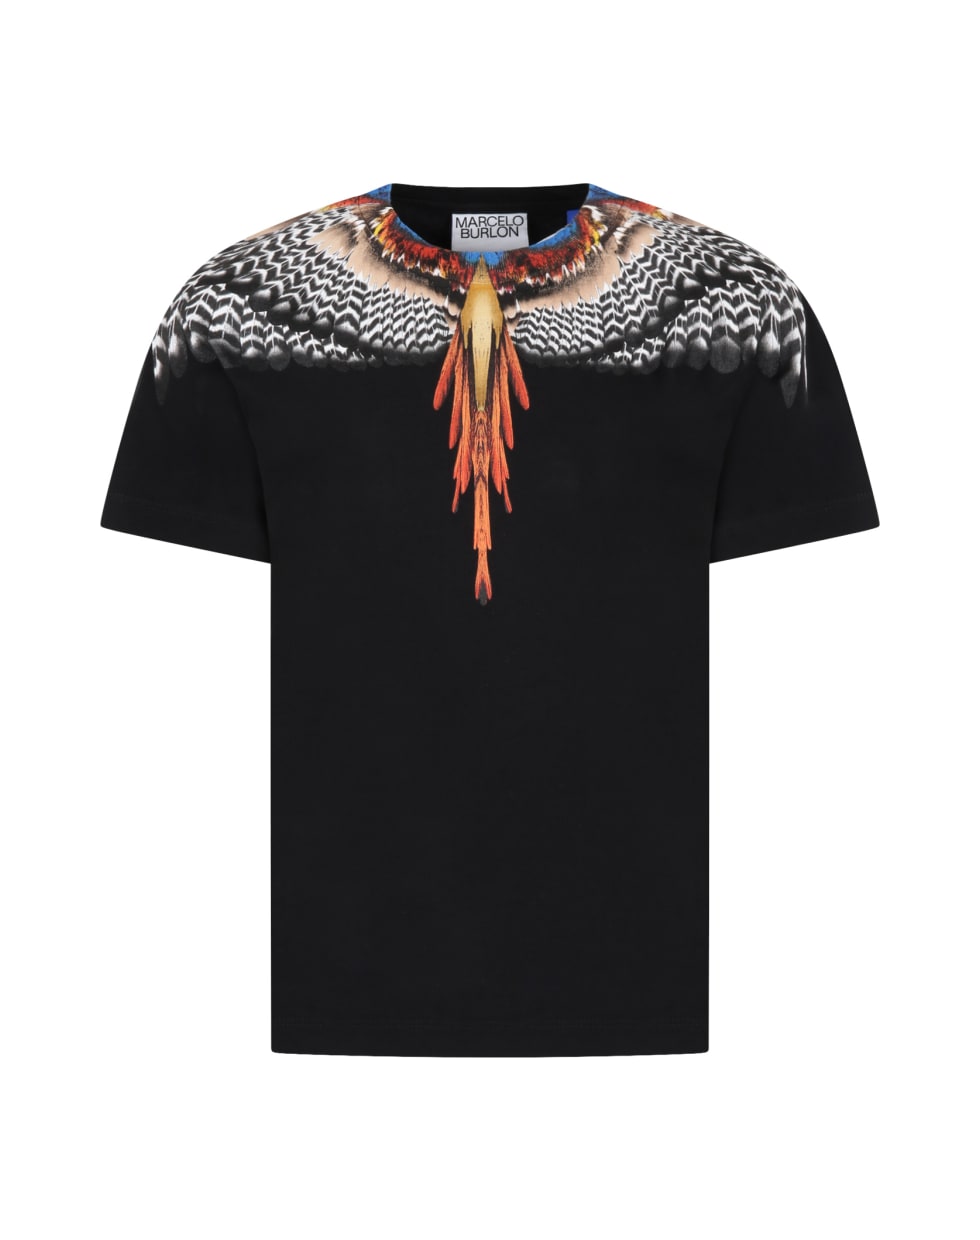 Marcelo Burlon Black T-shirt For Boy With Iconic Wings - Nero e Arancione